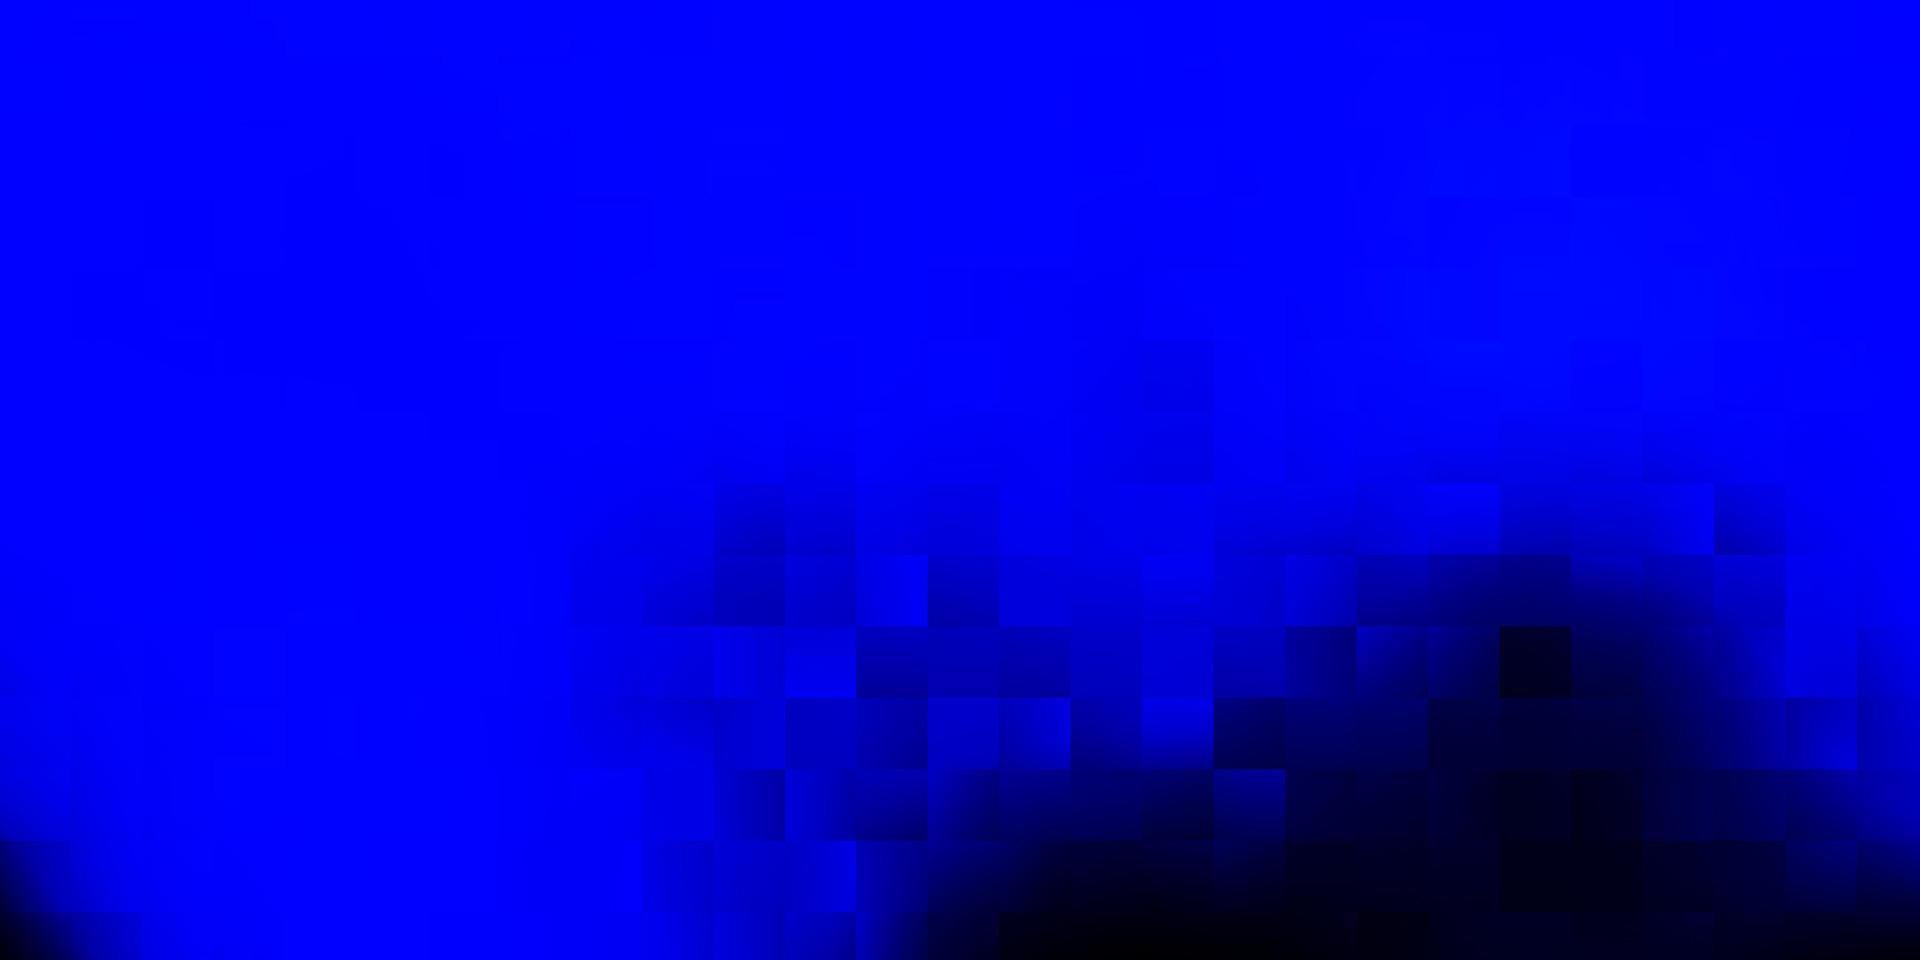 capa de vetor azul escuro em estilo quadrado.